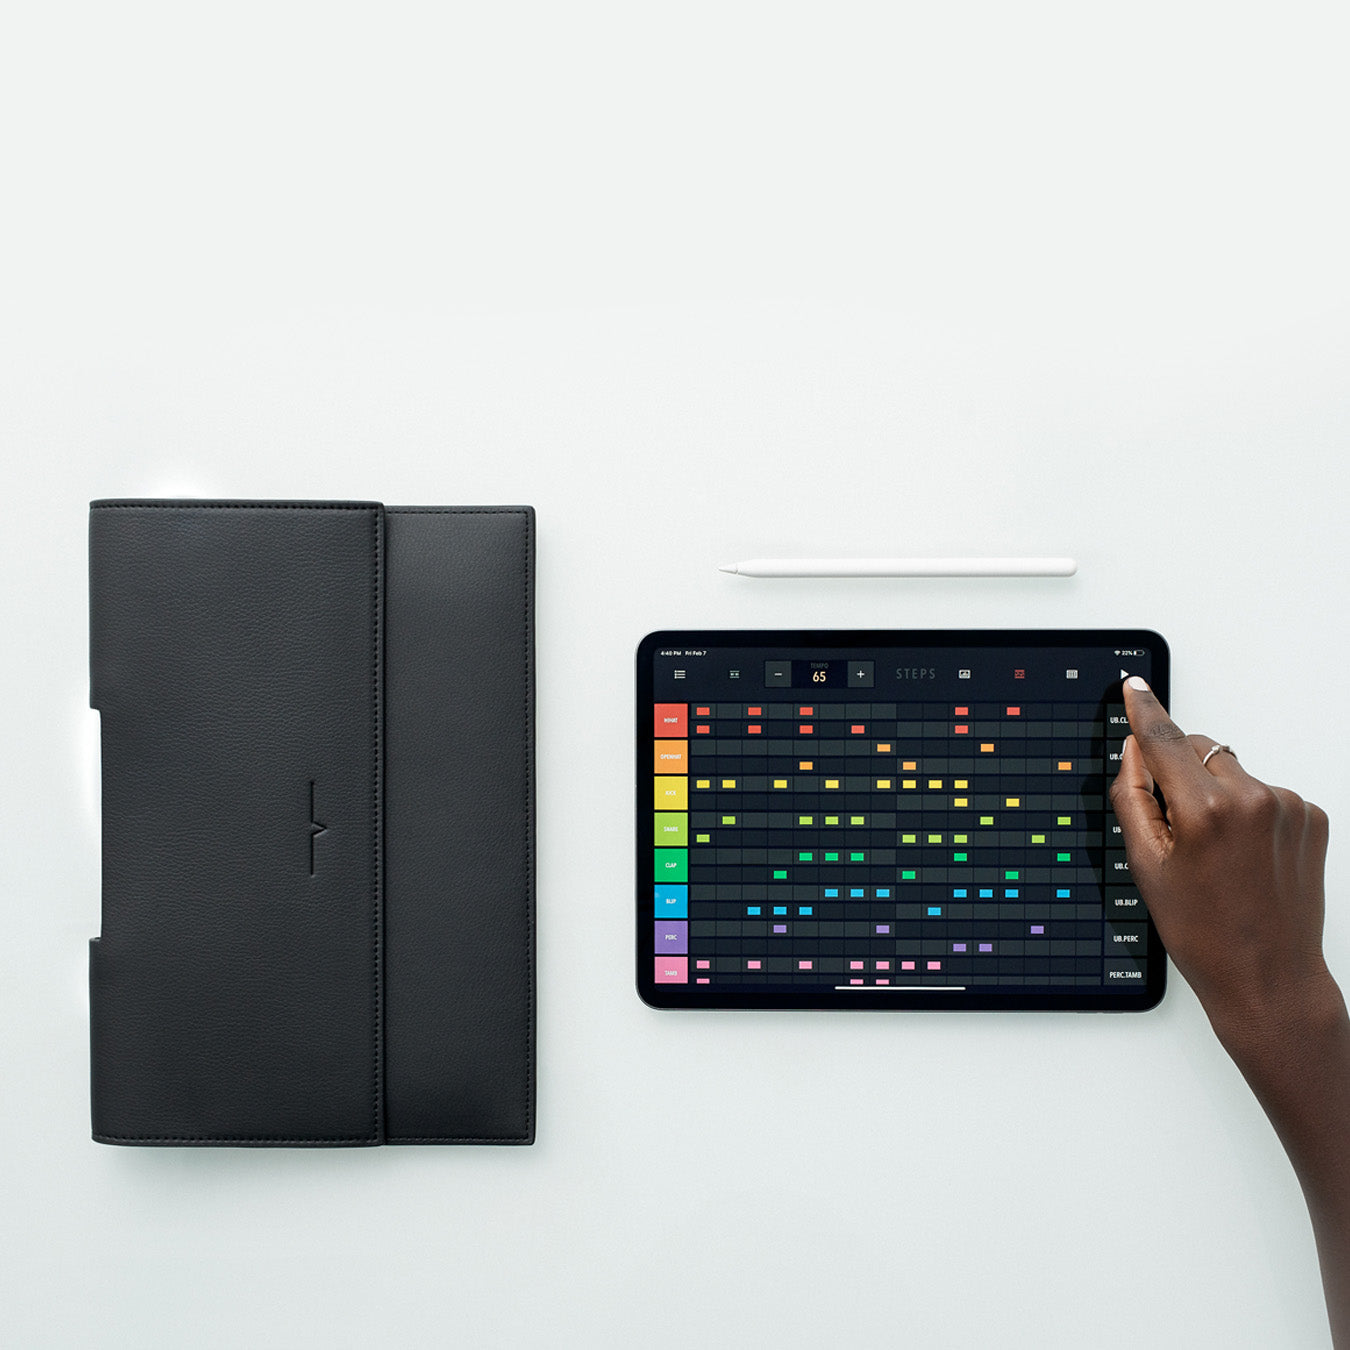 The iPad Portfolio 11-inch in Black – von Holzhausen